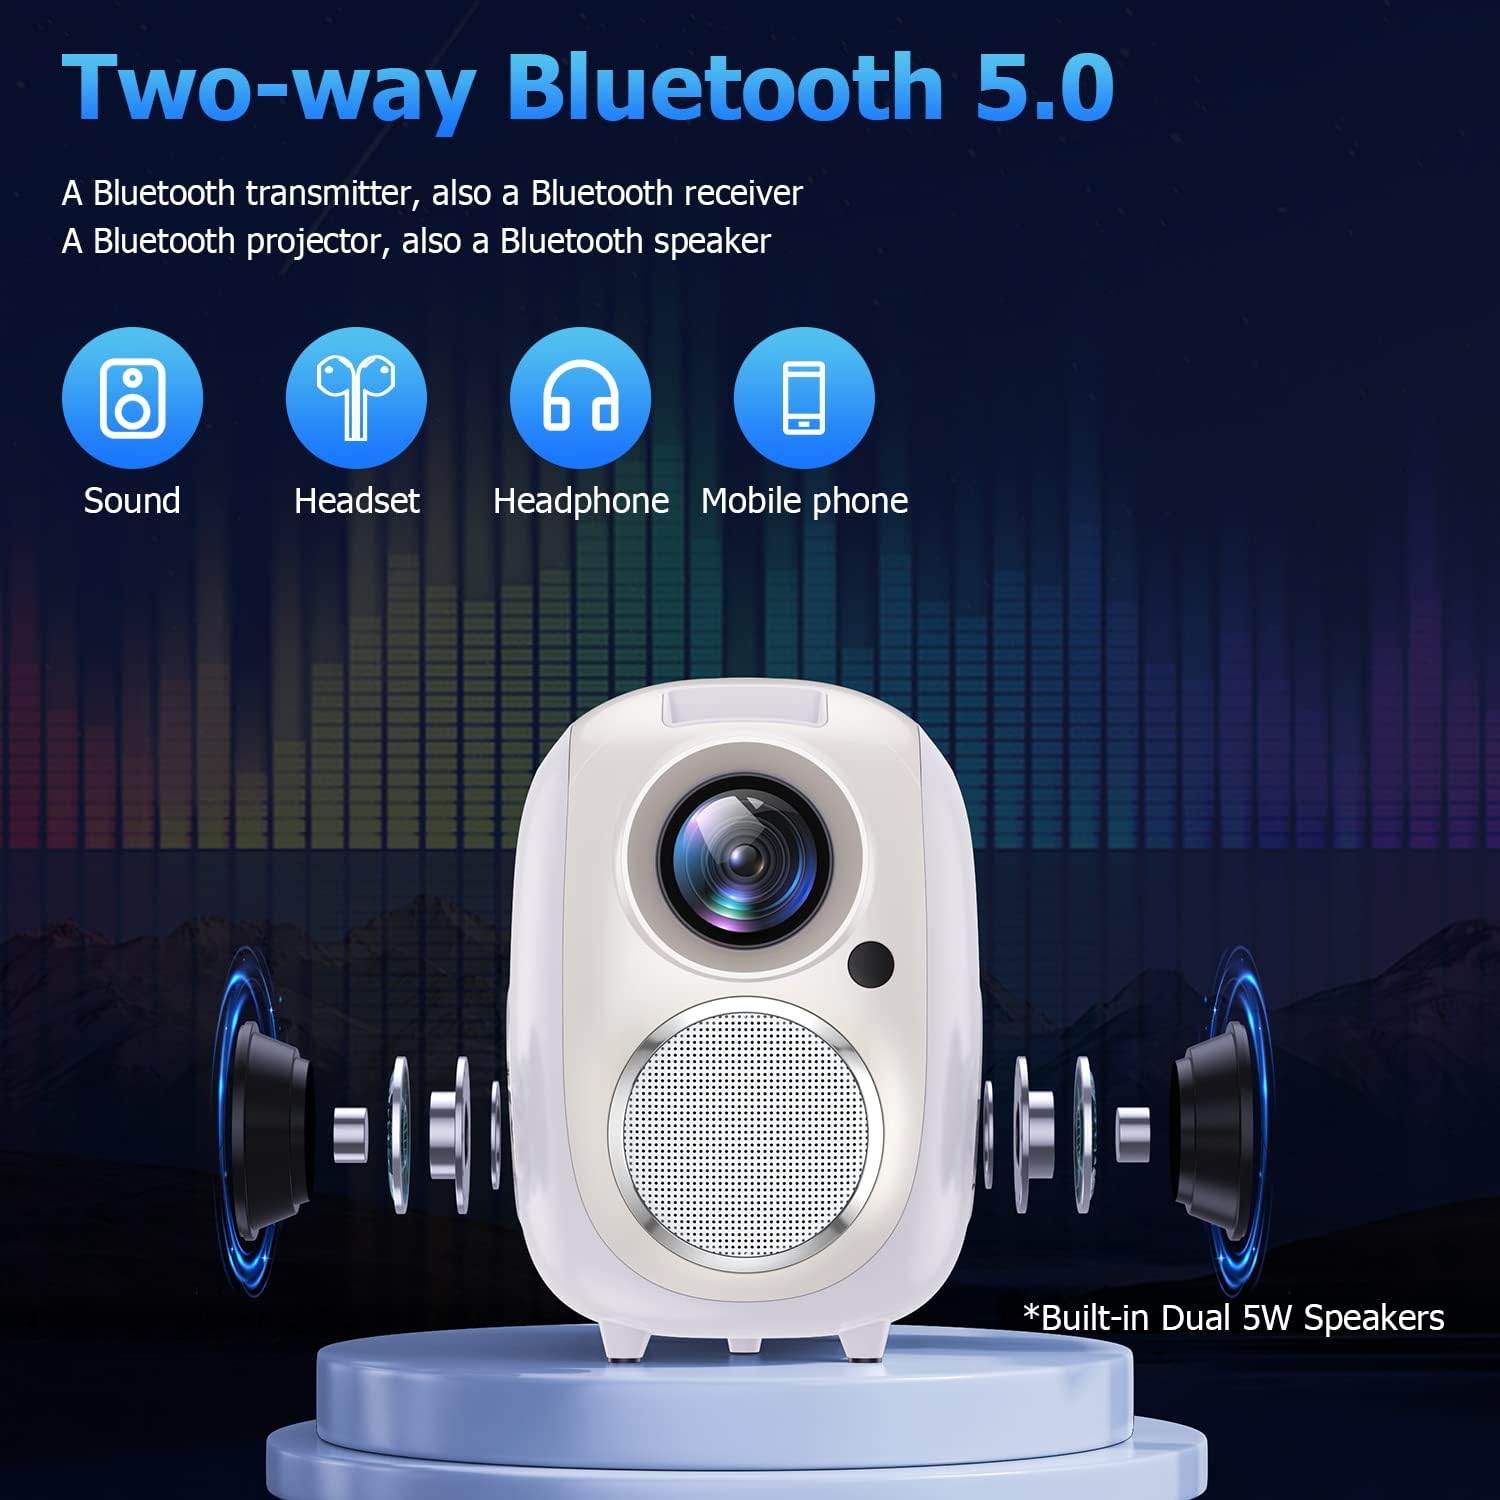 atongm 4k Projektör Wifi ve Bluetooth, Android 9.0 ile, 12000 Lümen Taşınabilir Video Projektör, Full HD 1080P 4K Akıllı Telefonla Uyumlu